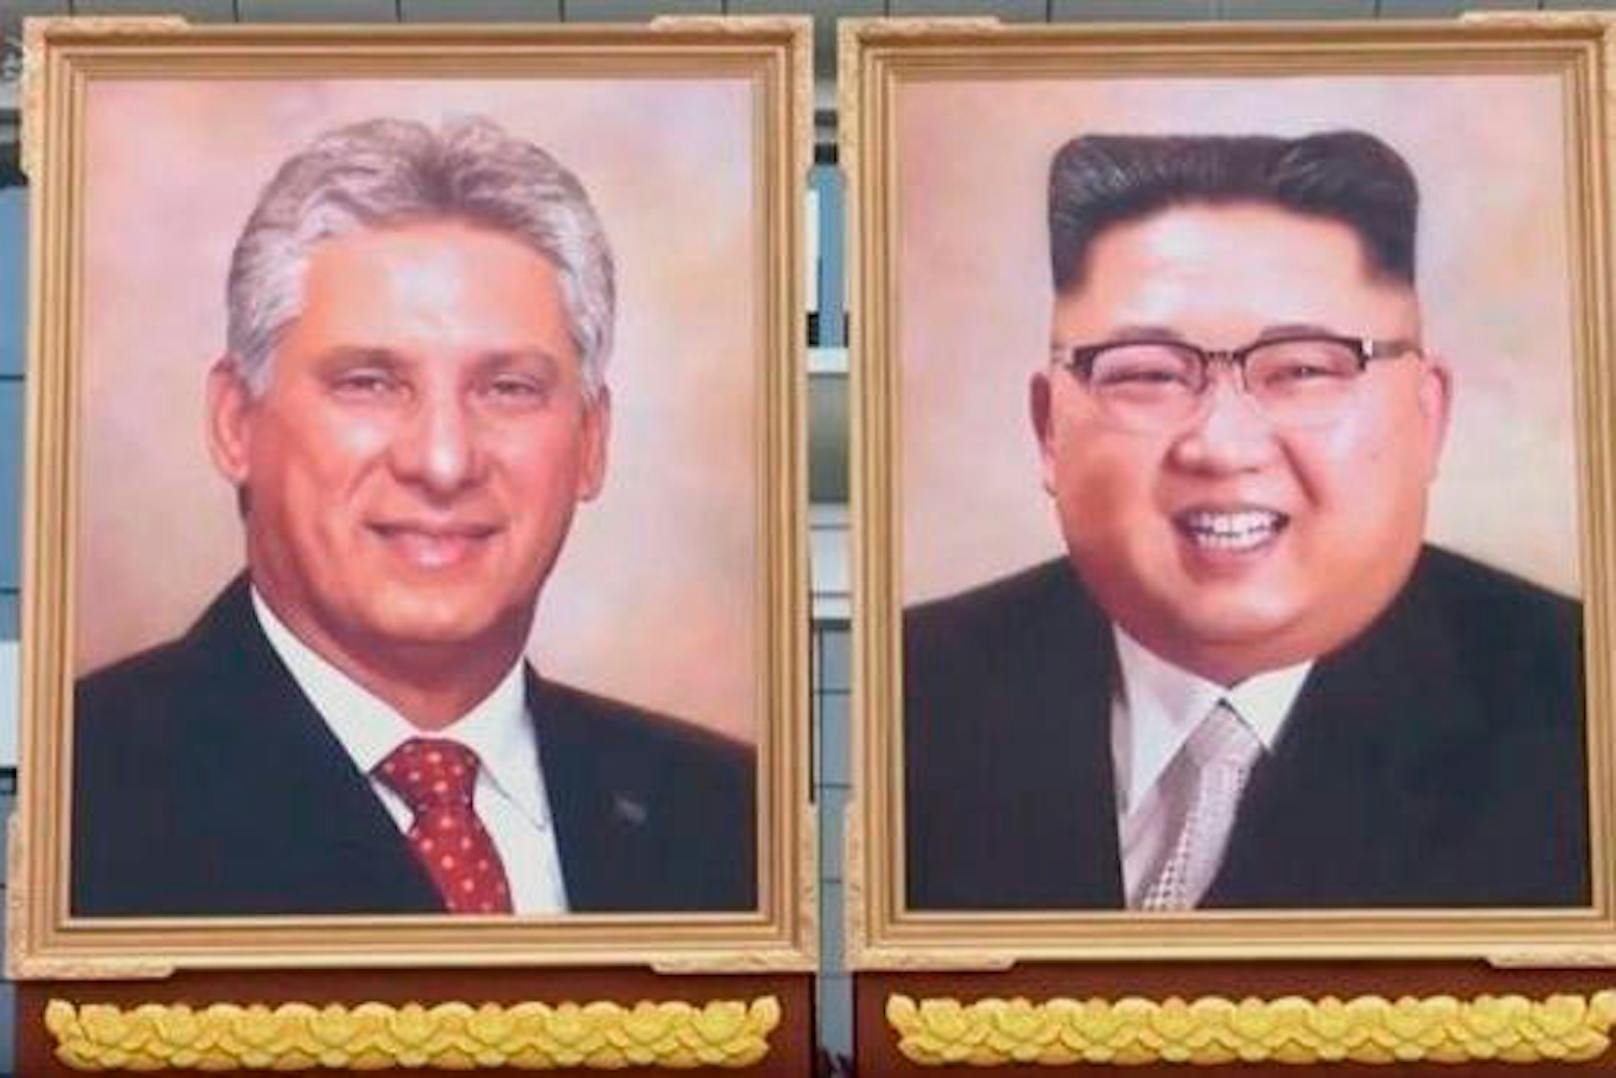 So sieht das neue Gemälde von Kim Jong-un aus. Links ein Porträt des kubanischen Präsidenten Miguel Díaz-Canel, ...
KCTV